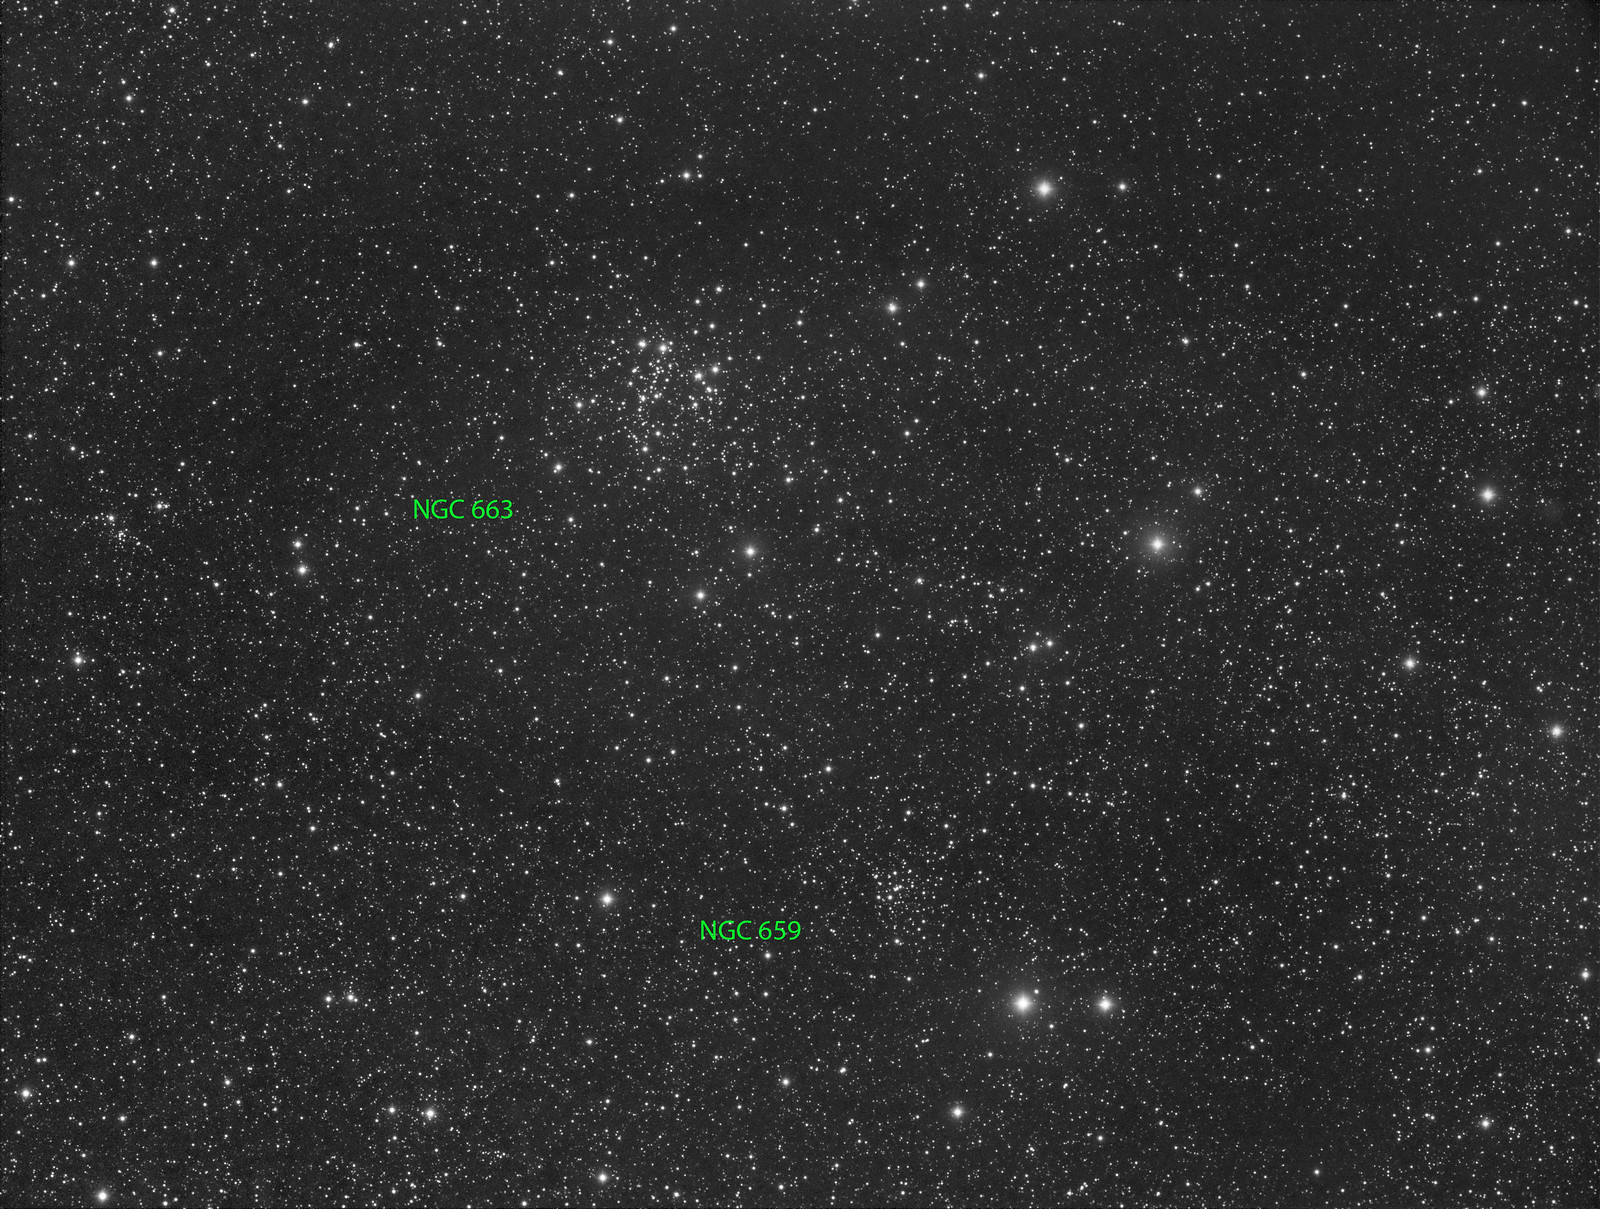 010 - NGC 663 - Luminance